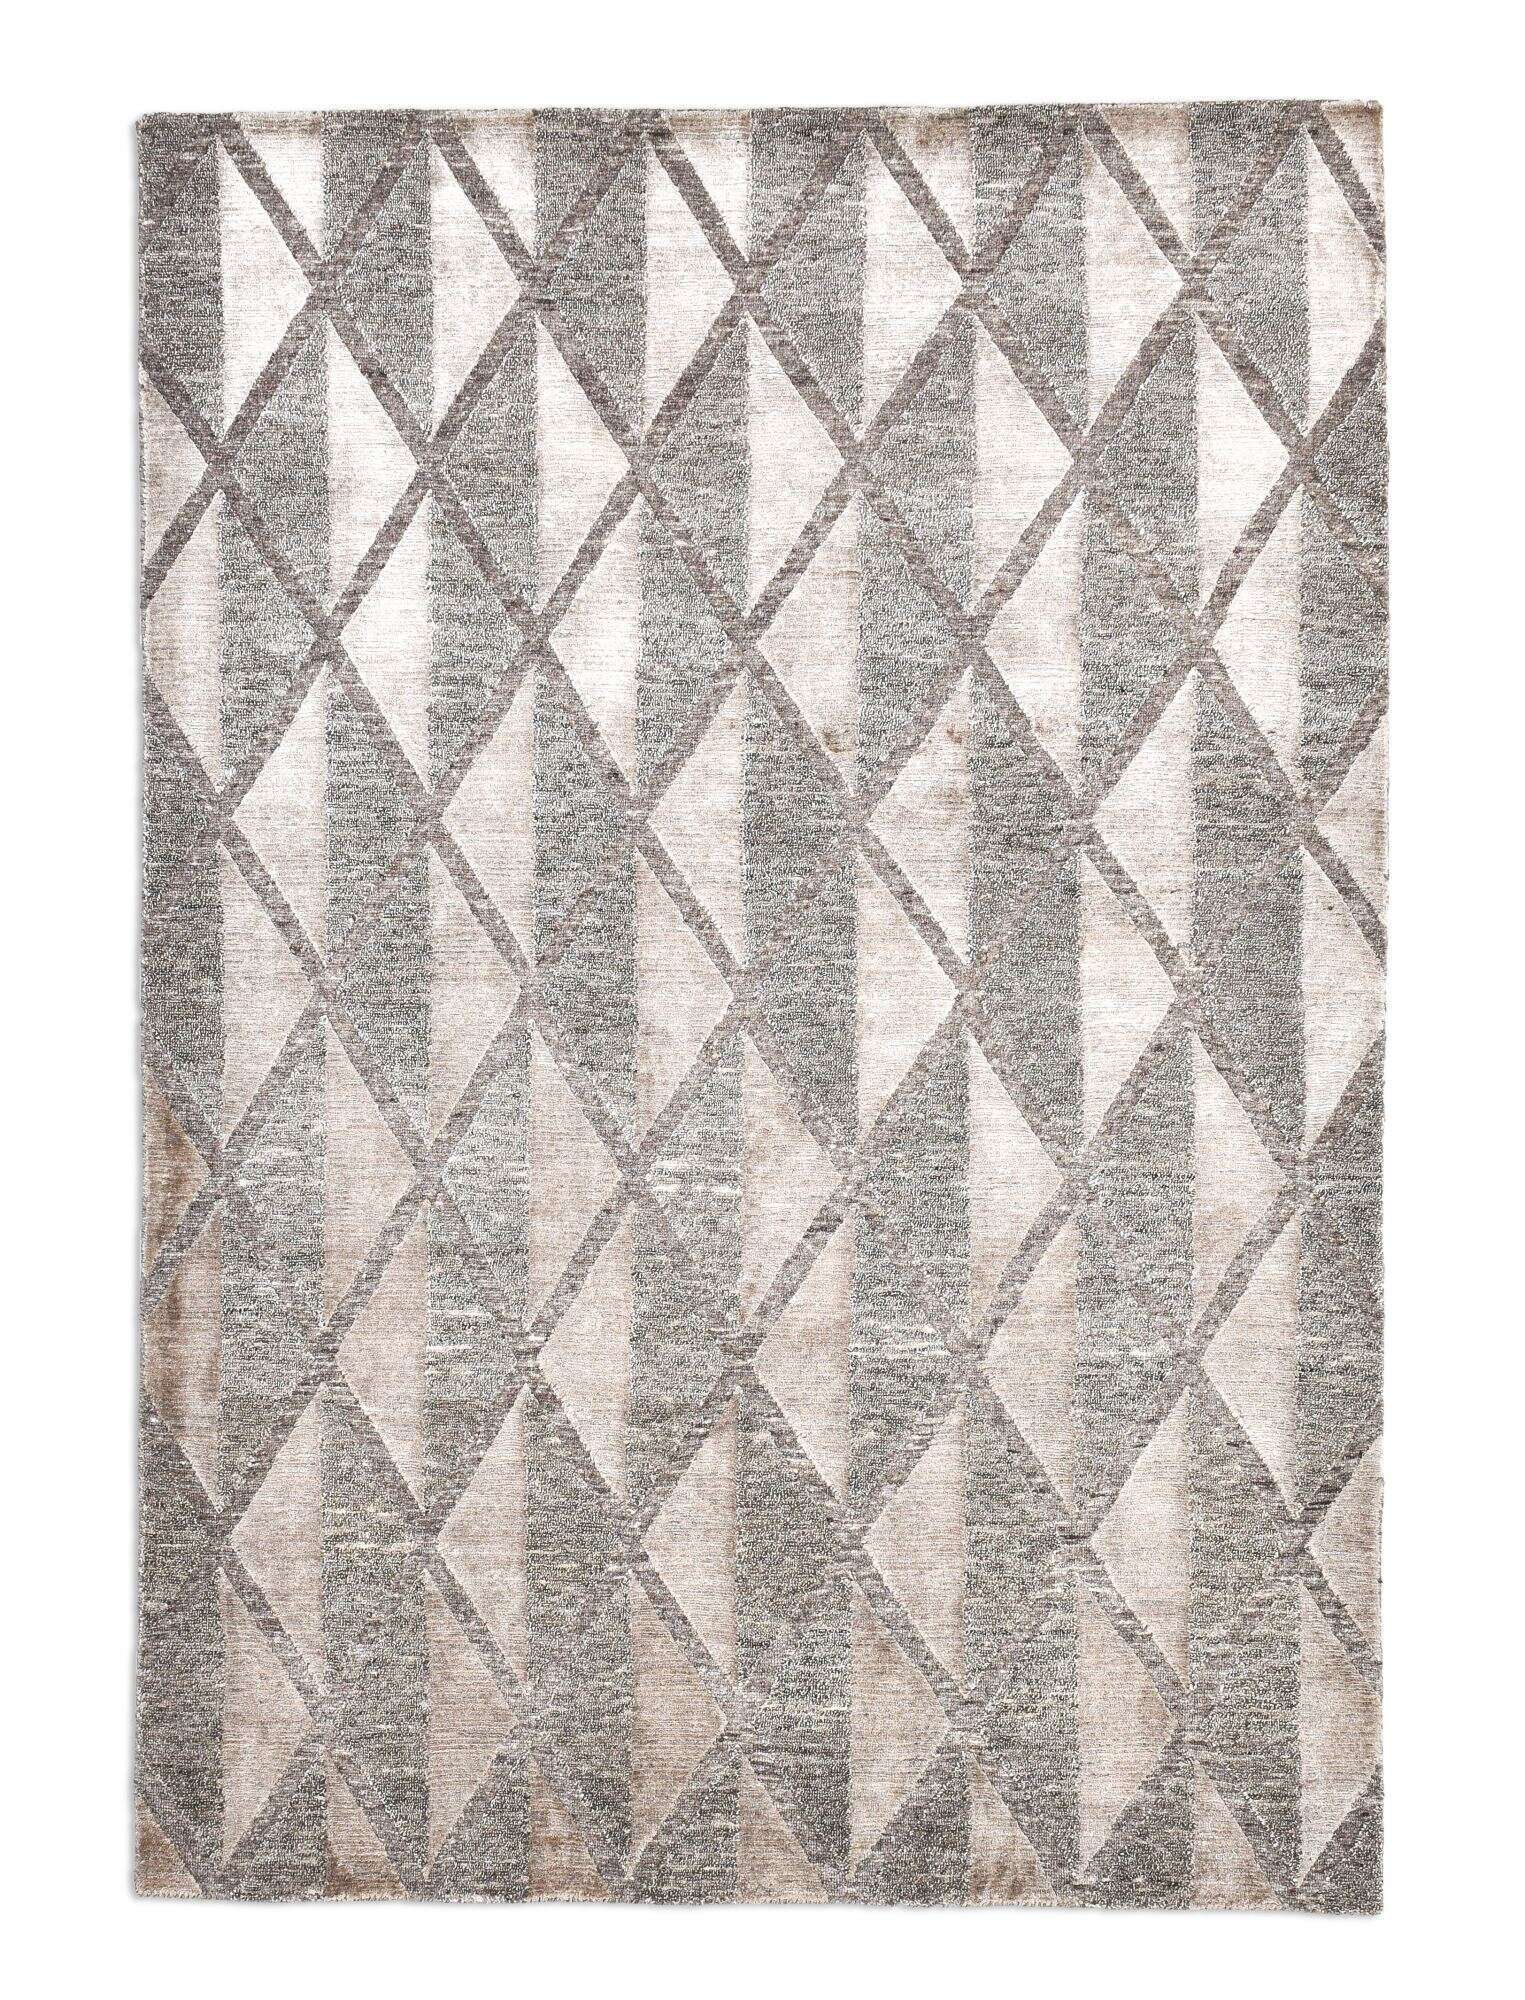 Victoria Moderner Teppich160x230cm Viskose und Wolle beige mit grau